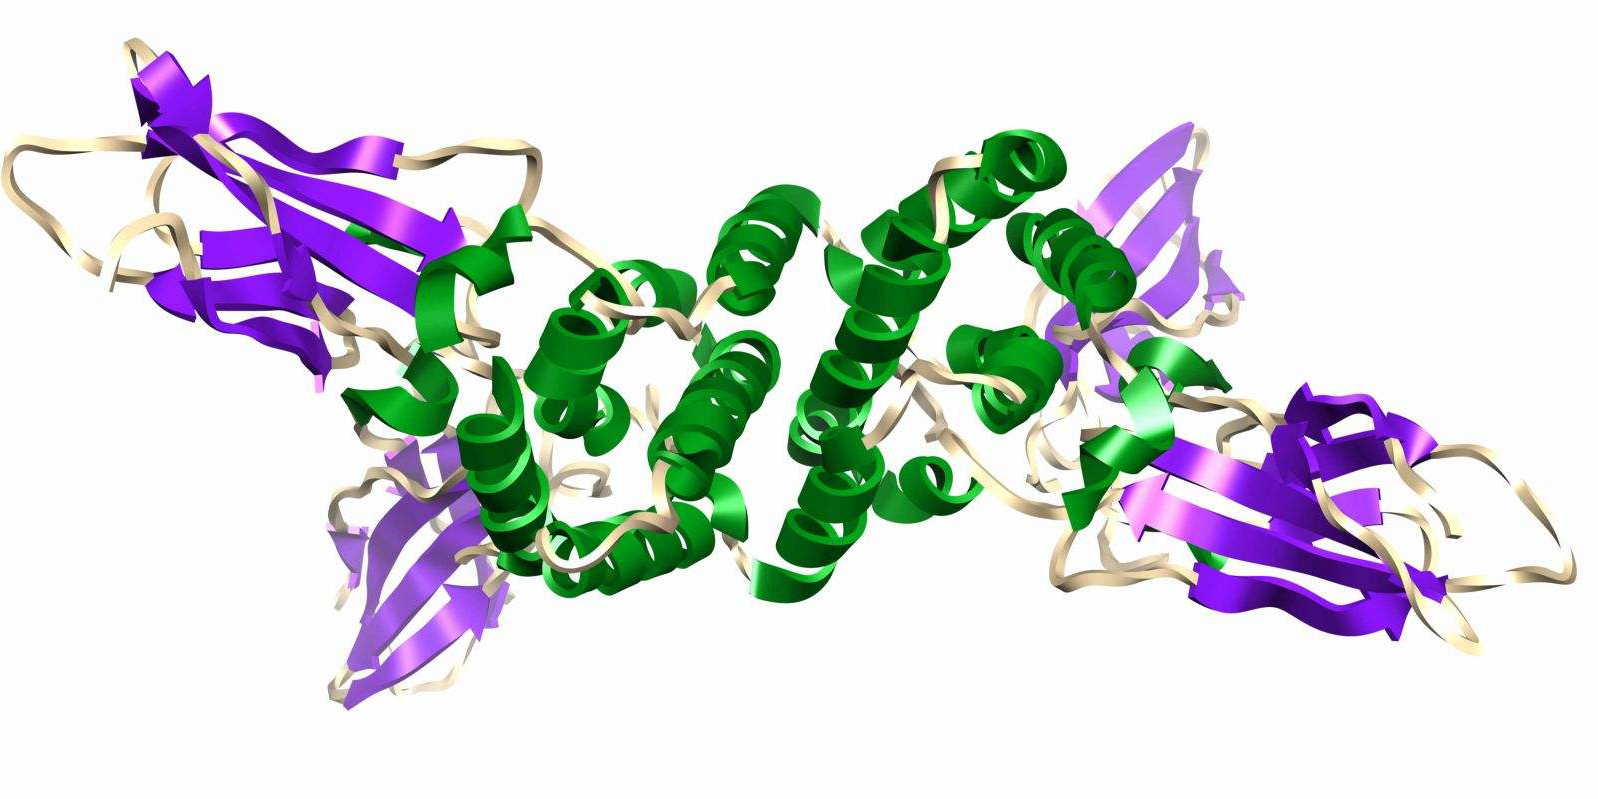 蛋白质HMGB1有望带来治疗哮喘新疗法